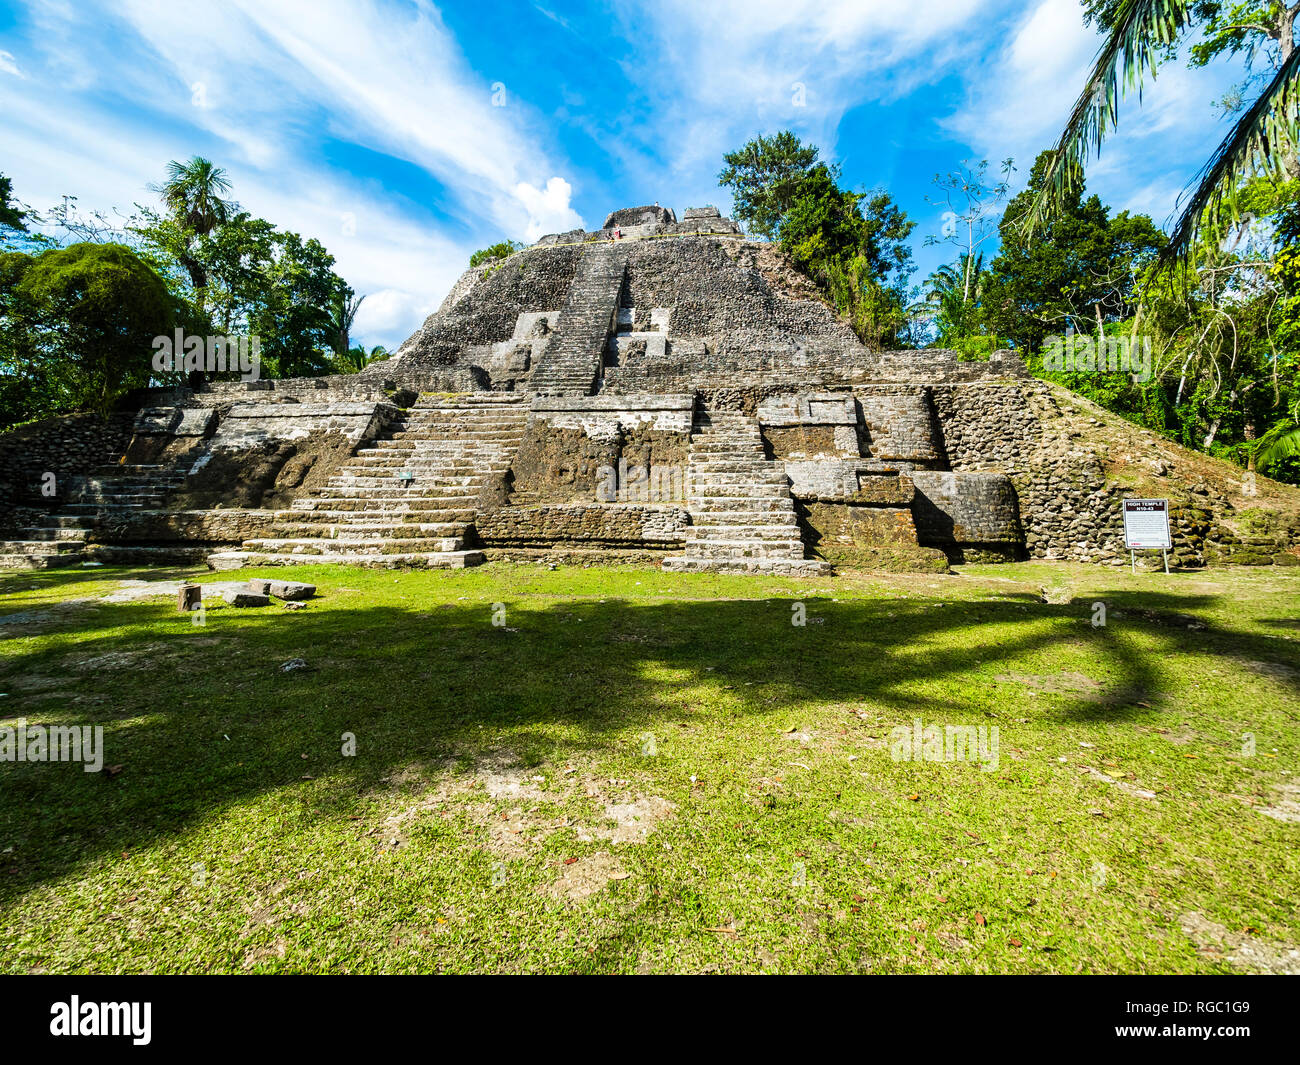 América Central, Belice, la península de Yucatán, New River, Lamanai, ruinas mayas, gran templo Foto de stock